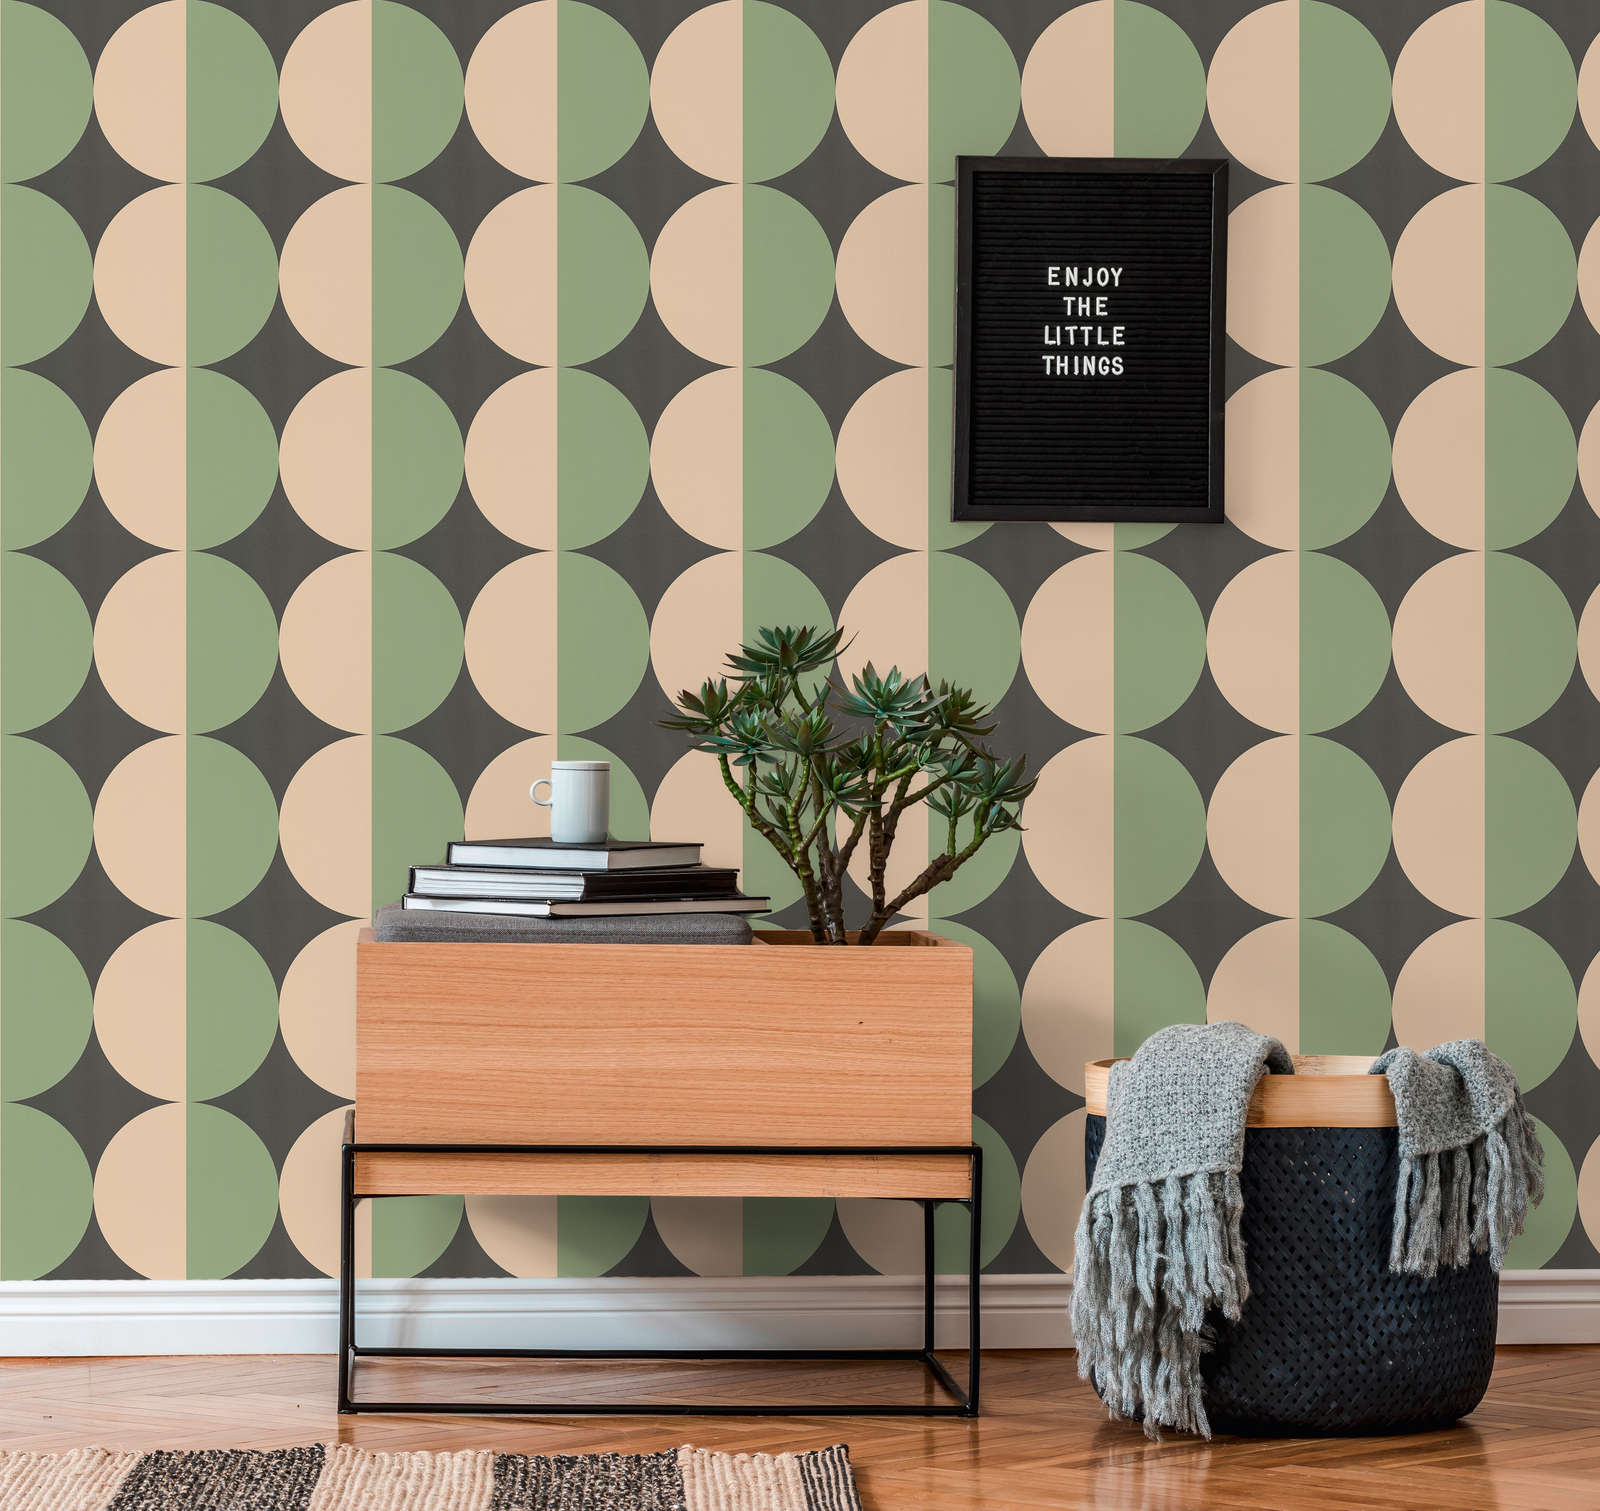             Graphic circle pattern non-woven wallpaper retro - green, beige, black
        